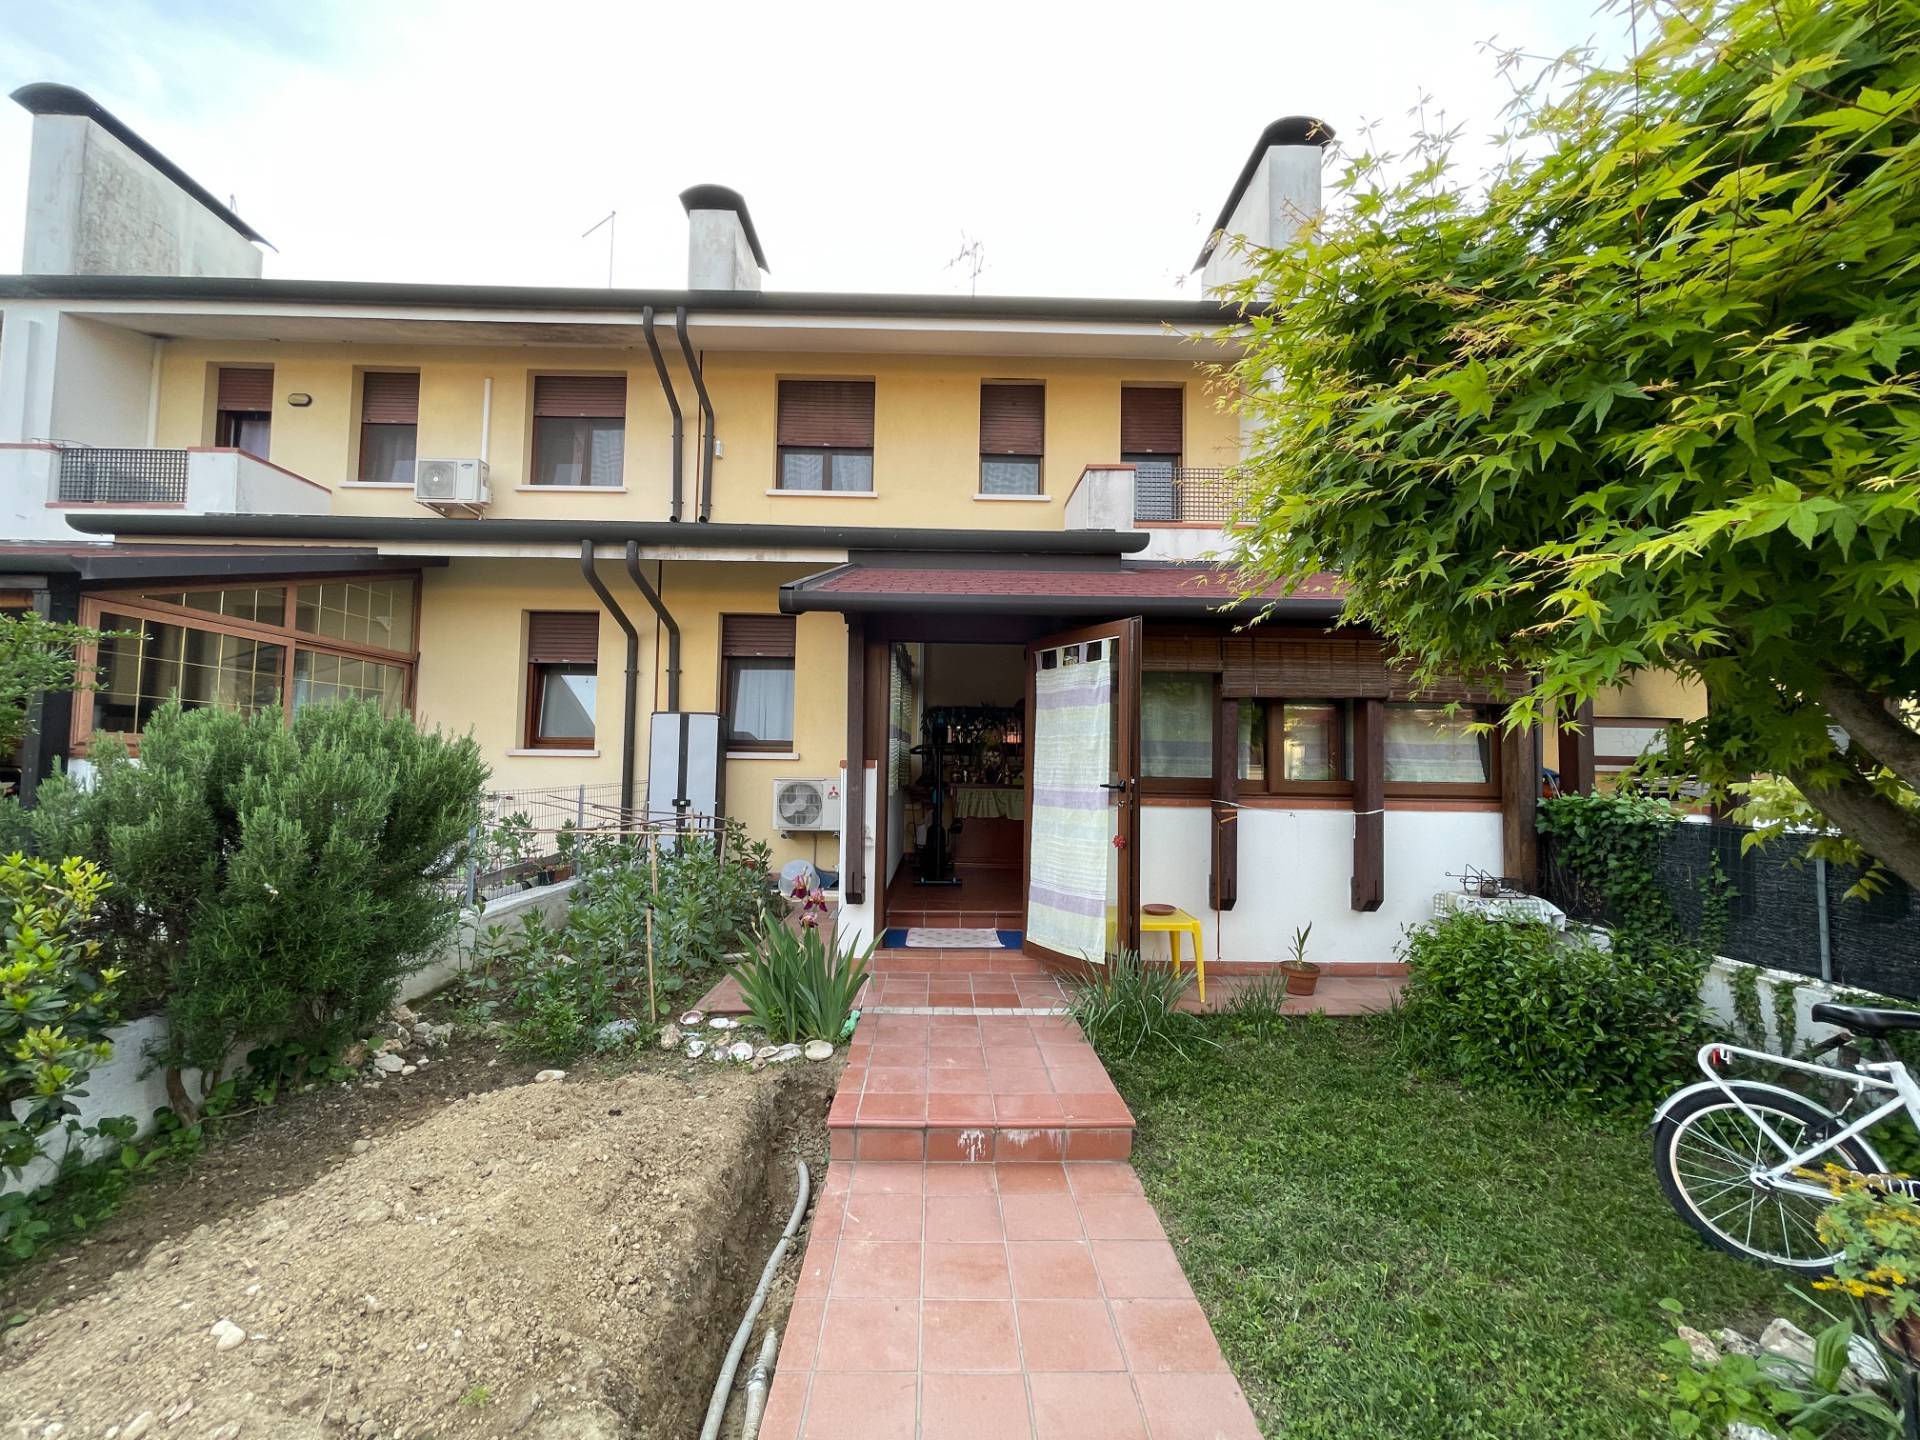 Villa a Schiera in vendita a Casale sul Sile, 6 locali, prezzo € 265.000 | CambioCasa.it